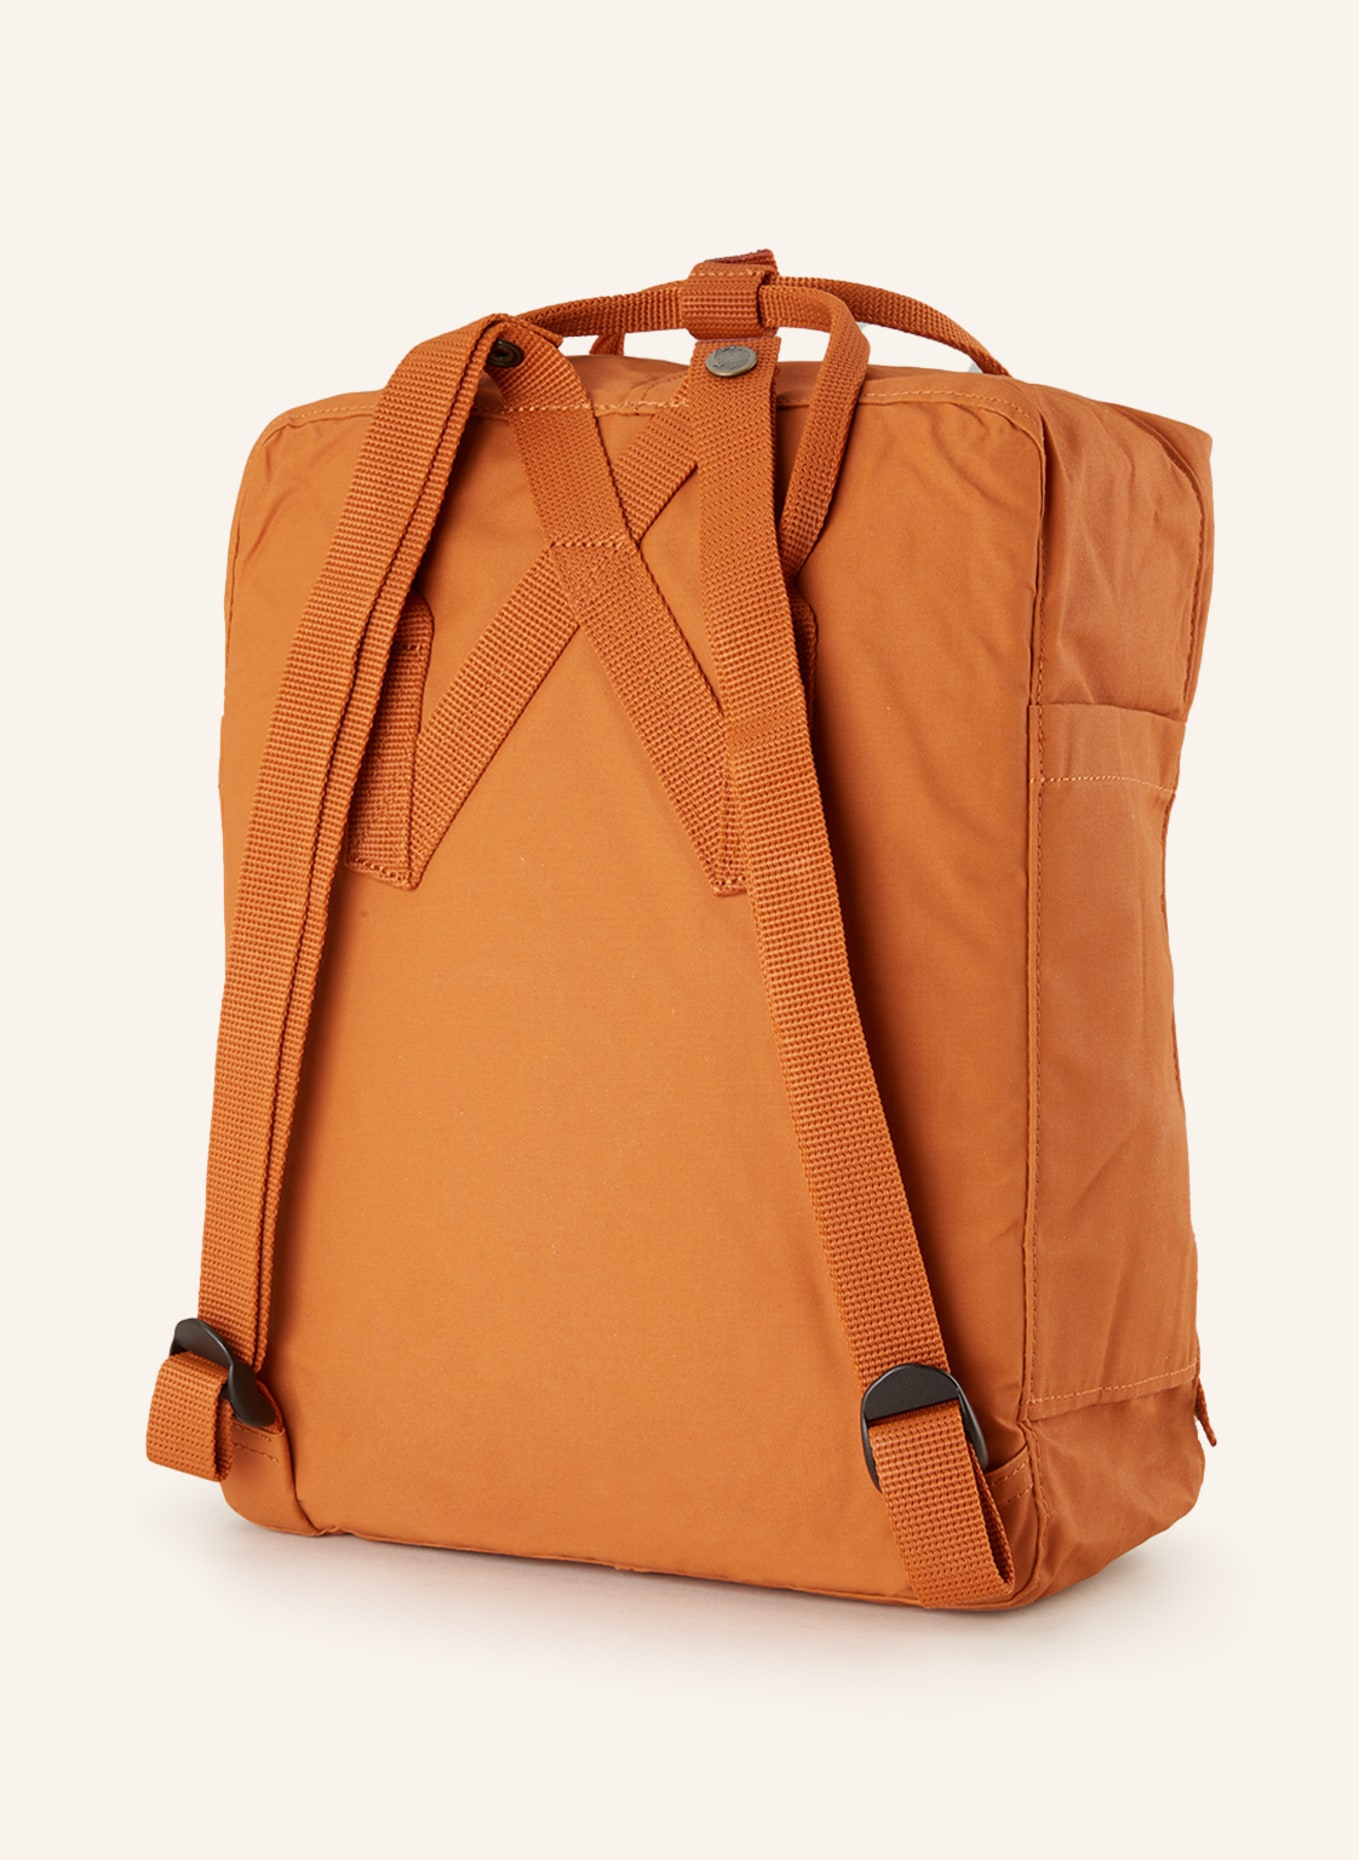 FJÄLLRÄVEN Backpack KANKEN 16 l, Color: 243 Desert Brown (Image 2)